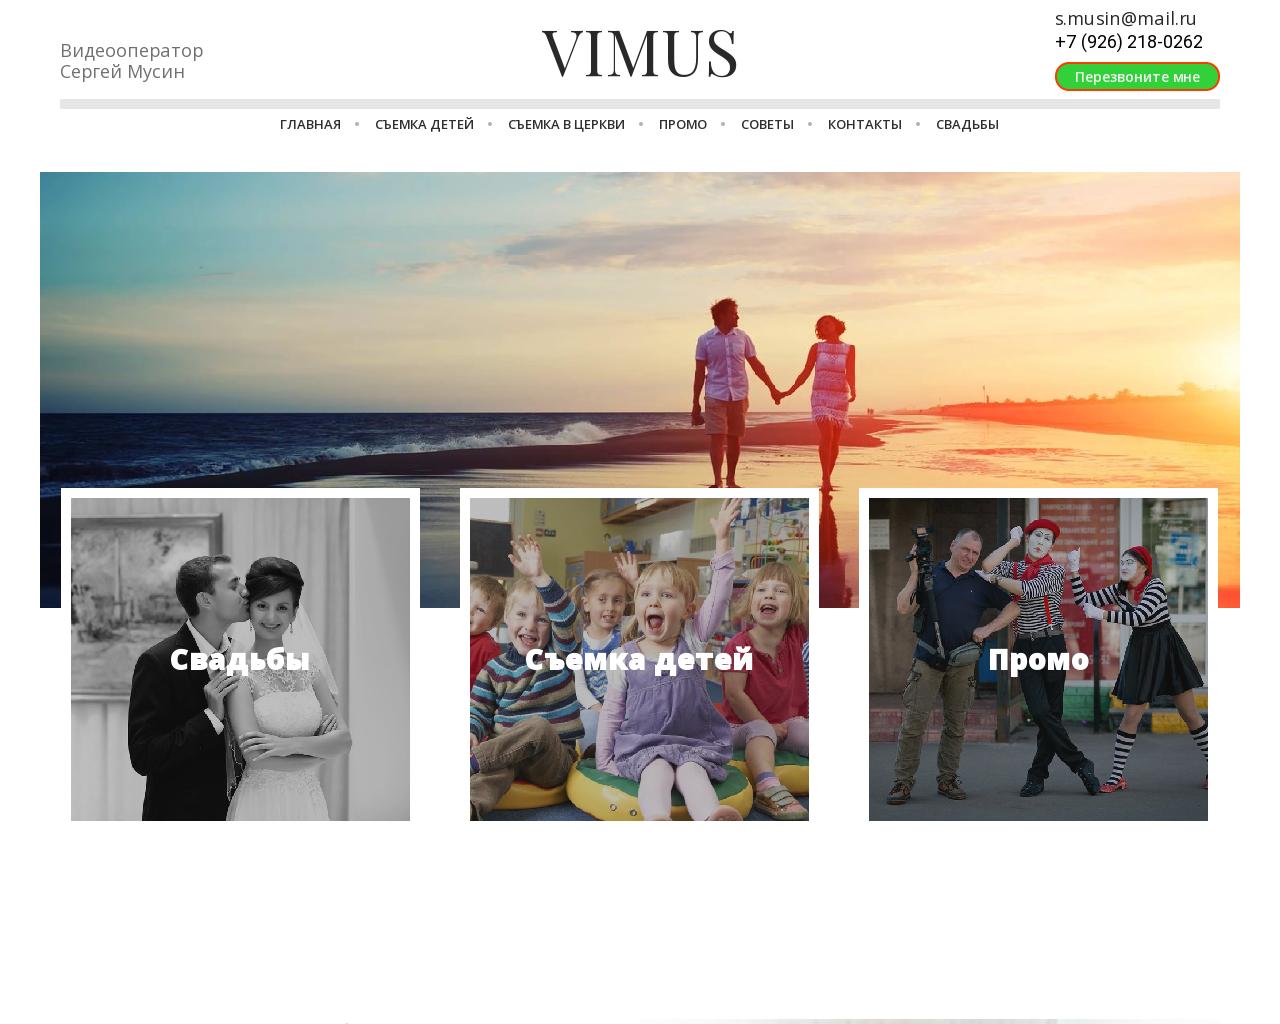 Изображение сайта vimus.su в разрешении 1280x1024